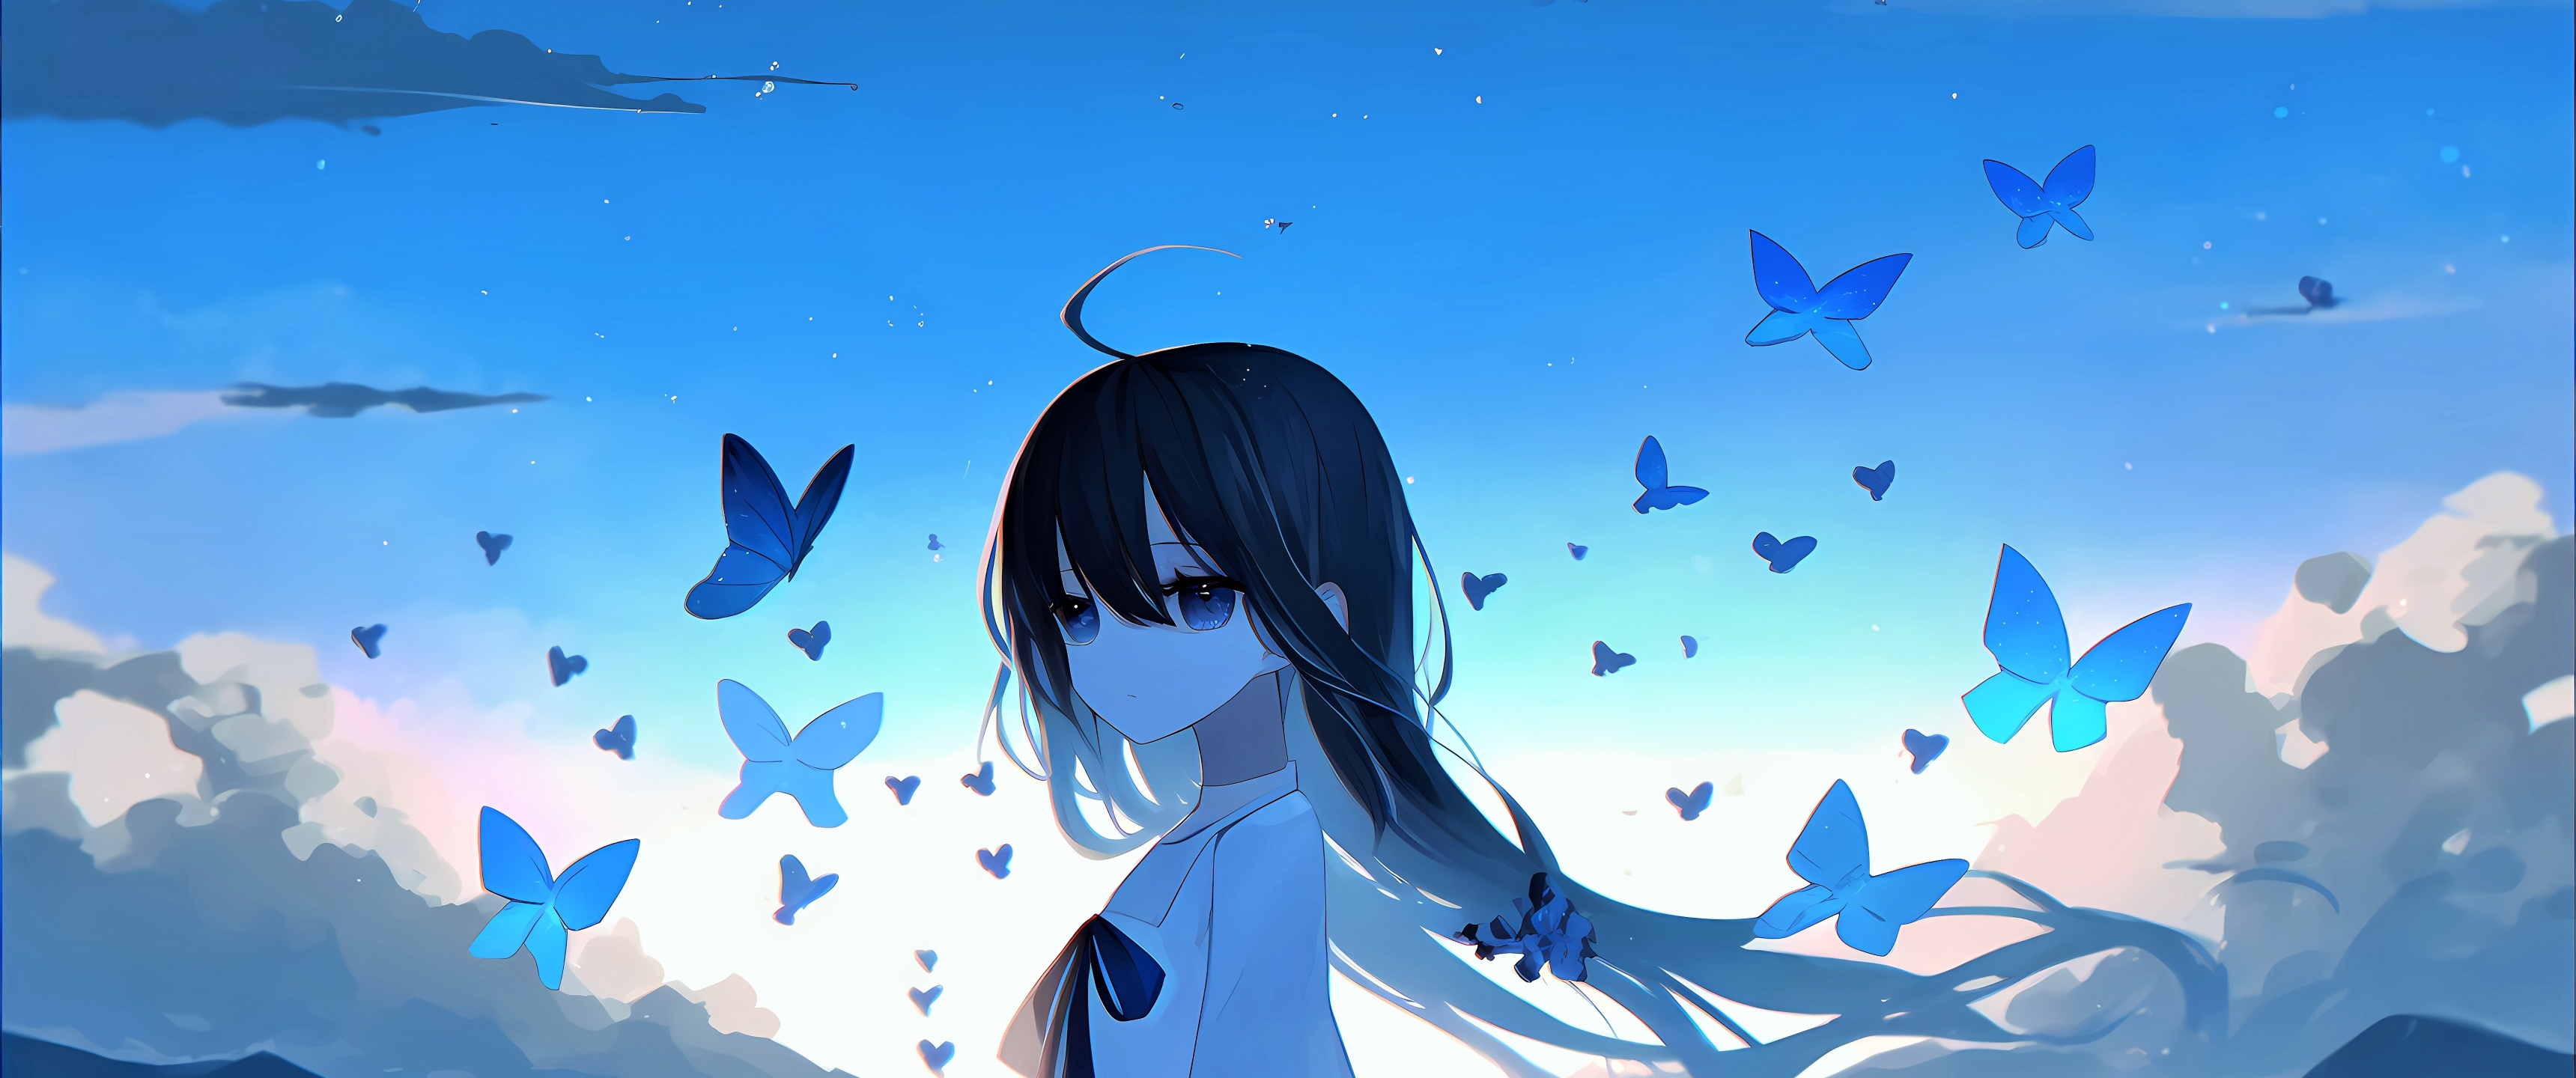 Sad girl Wallpaper 4K, Anime girl, Mood, Anime, #10021